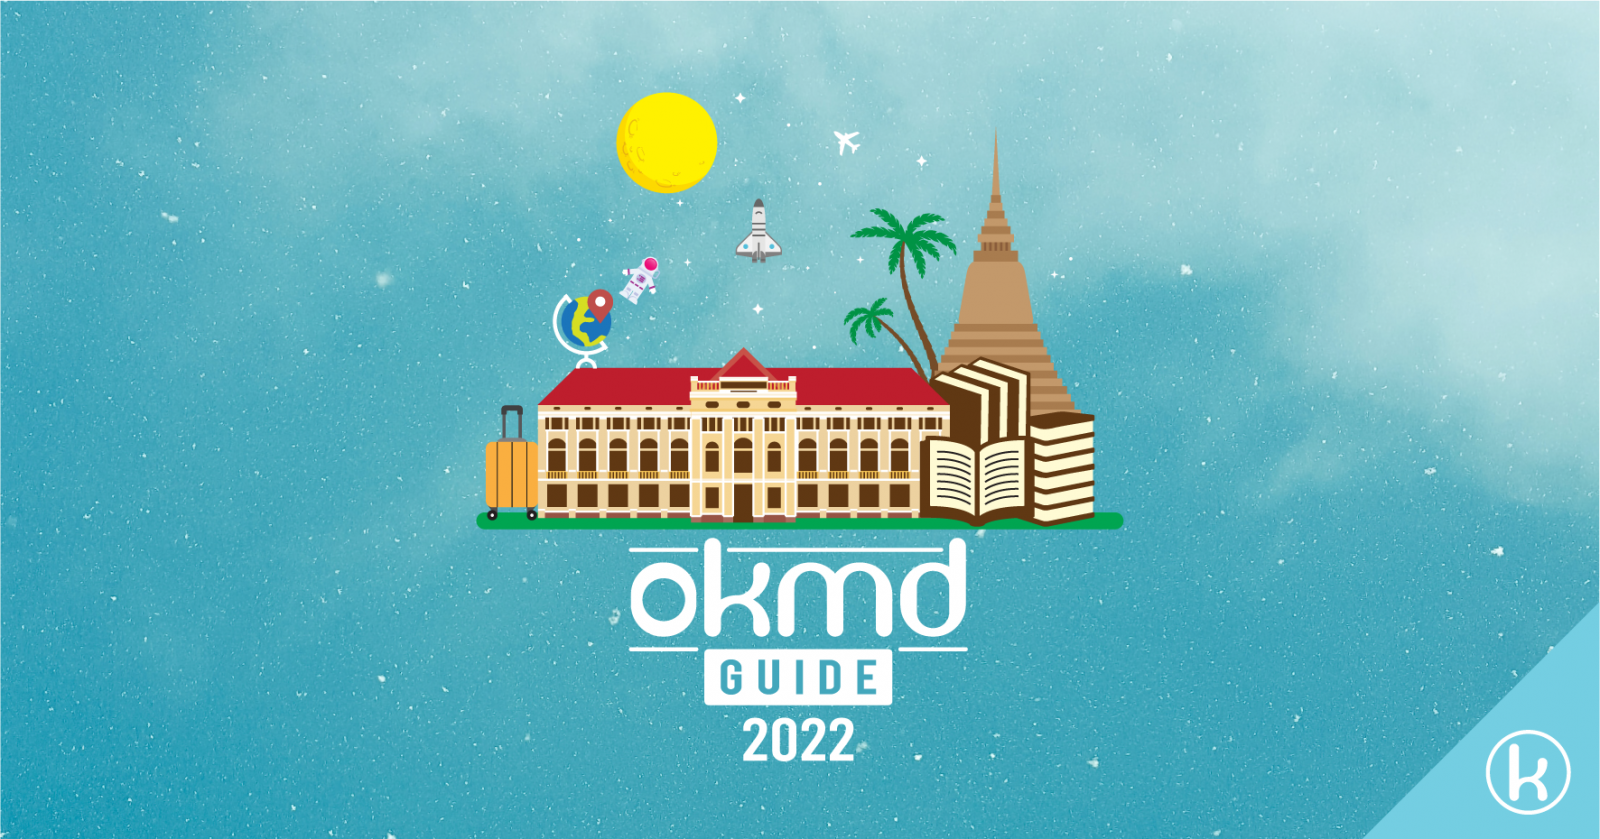 OKMD Guide เตรียมเส้นทางท่องเที่ยวรับความรู้ กับ 12 แหล่งเรียนรู้สร้างสรรค์แห่งปี จาก OKMD